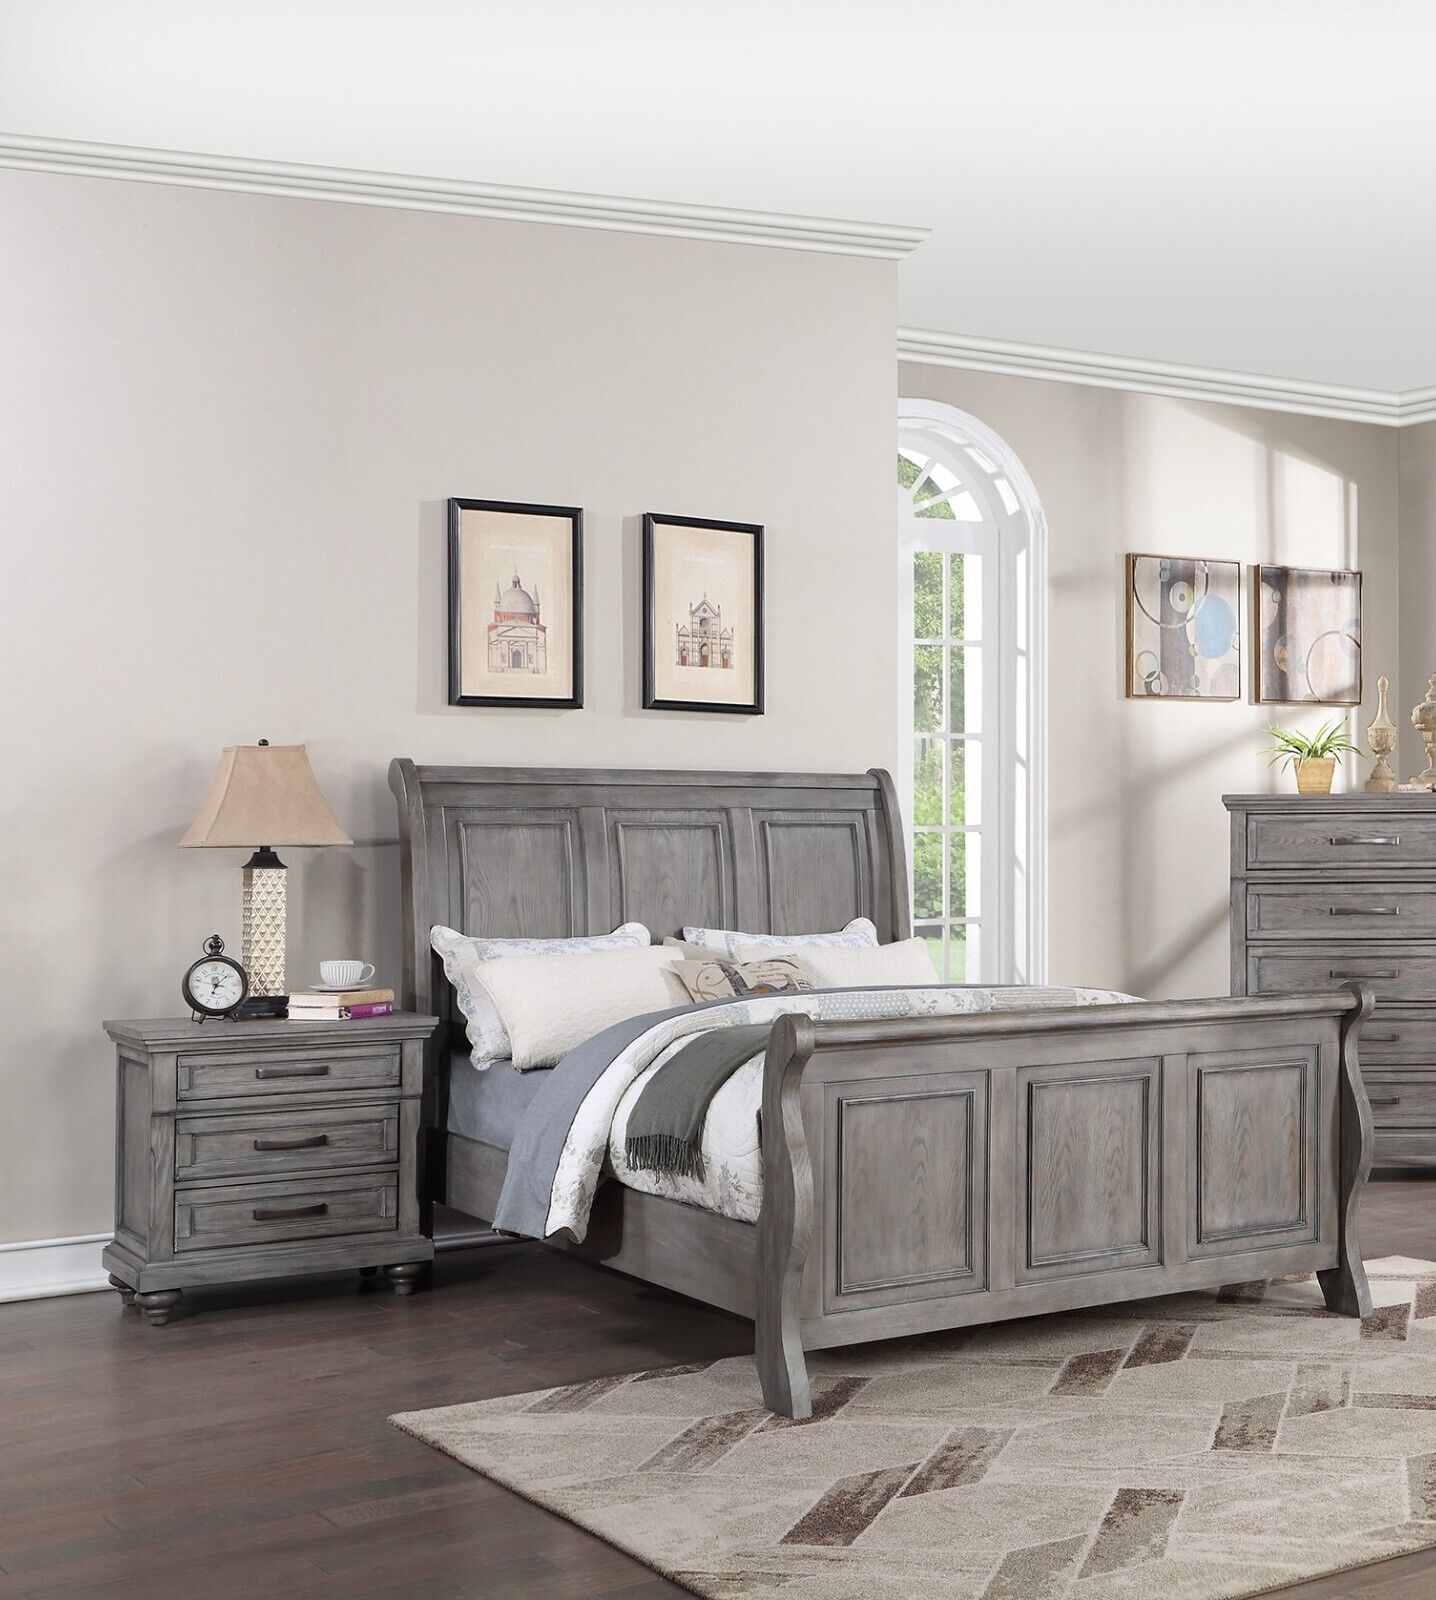 Esofastore Grey Finish Wooden Queen Size Bed 2x Nightstands 3pc Set Bedroom Furniture Sleigh 3-Panel Design Headboard Footboard